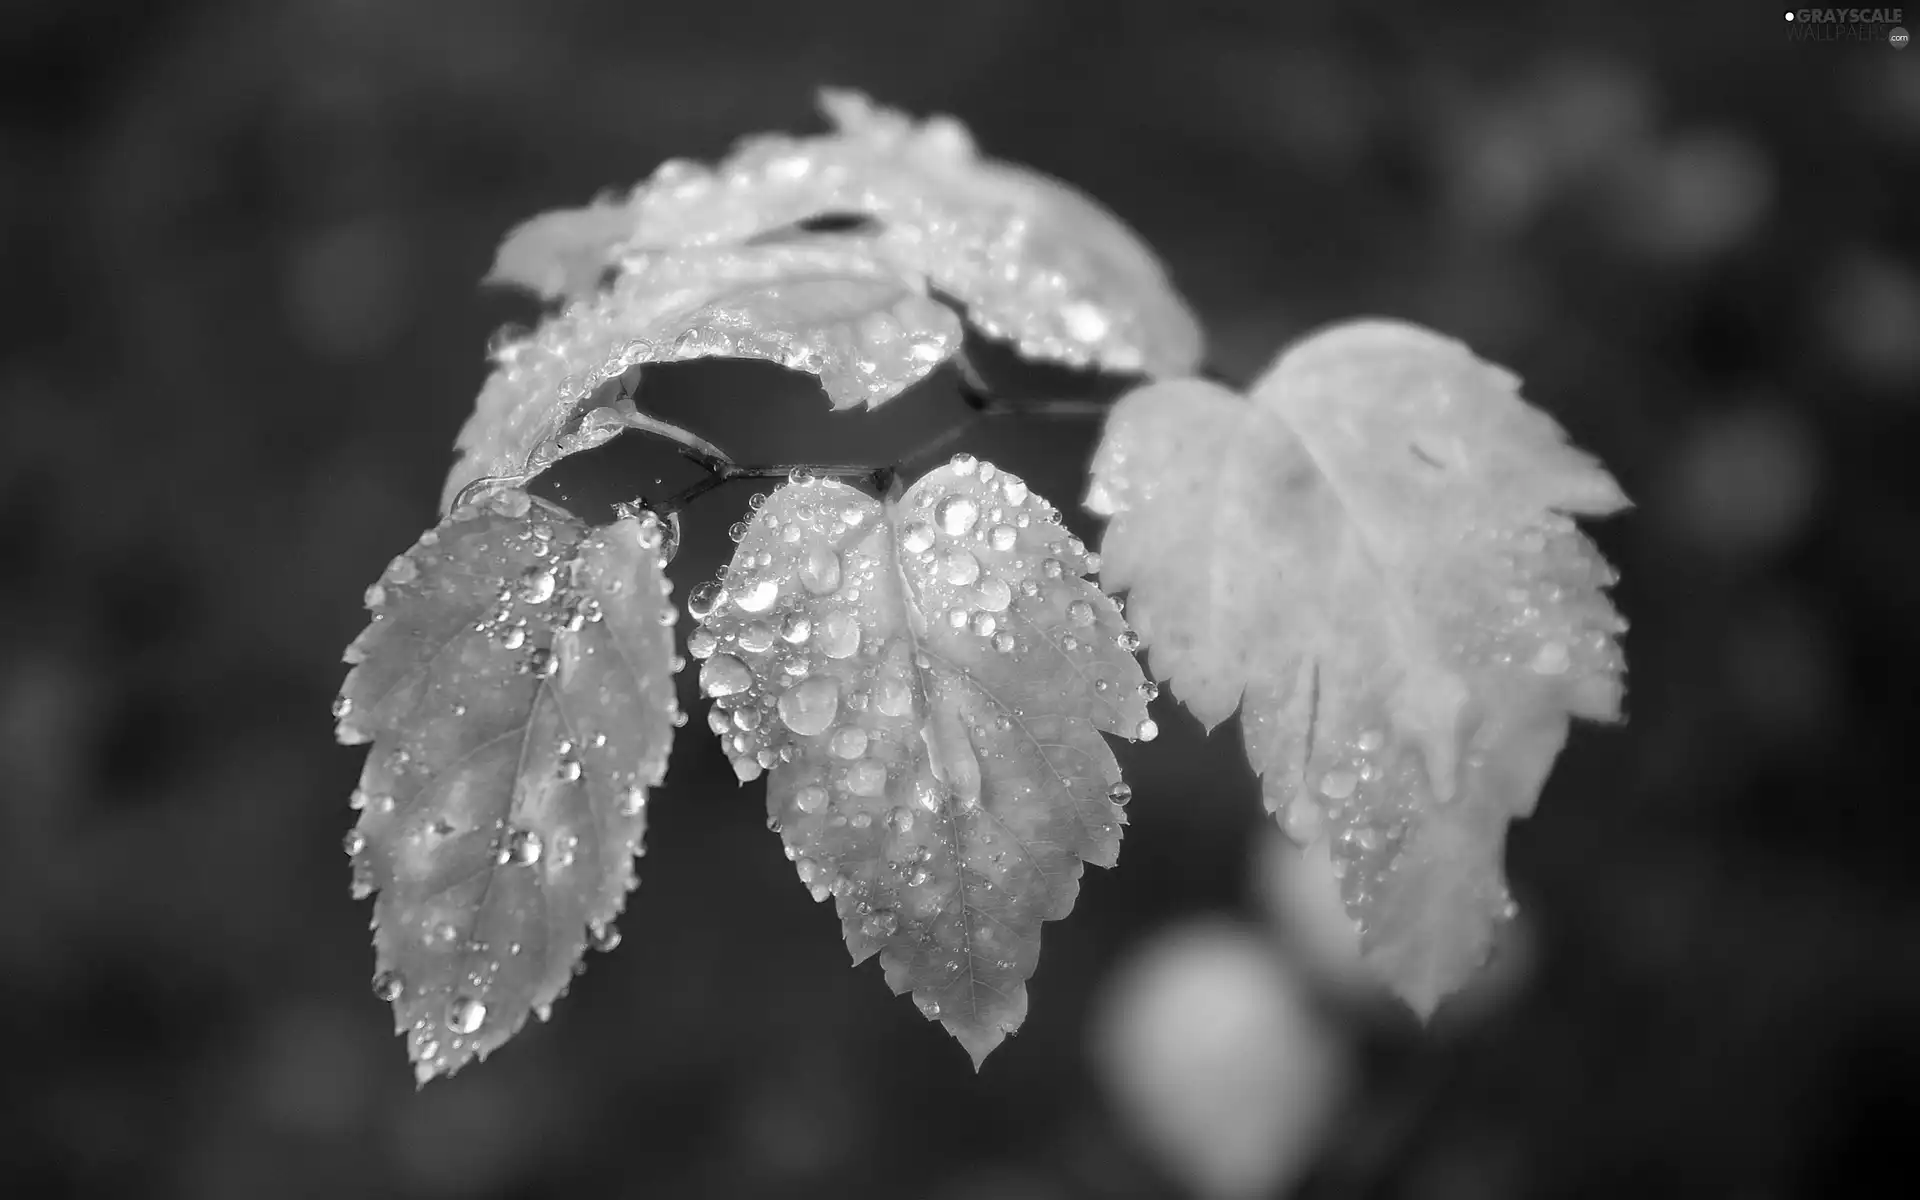 Leaf, drops